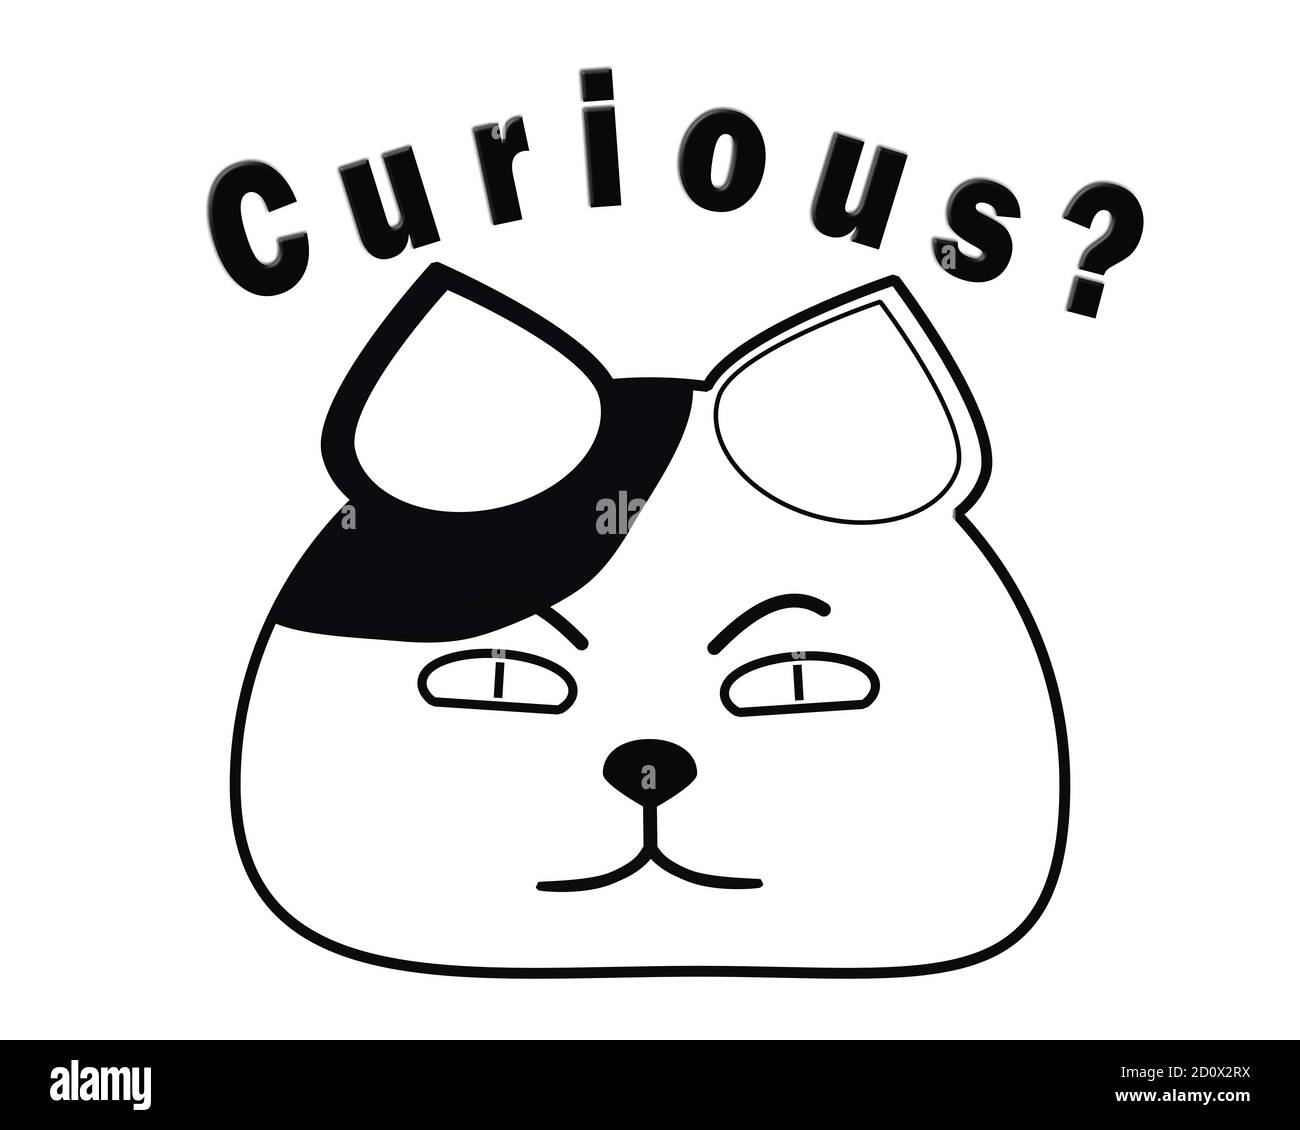 Gato curioso - la ilustración del concepto de la educación representa gato gordo con curiosidad insaciable para aprender. Foto de stock